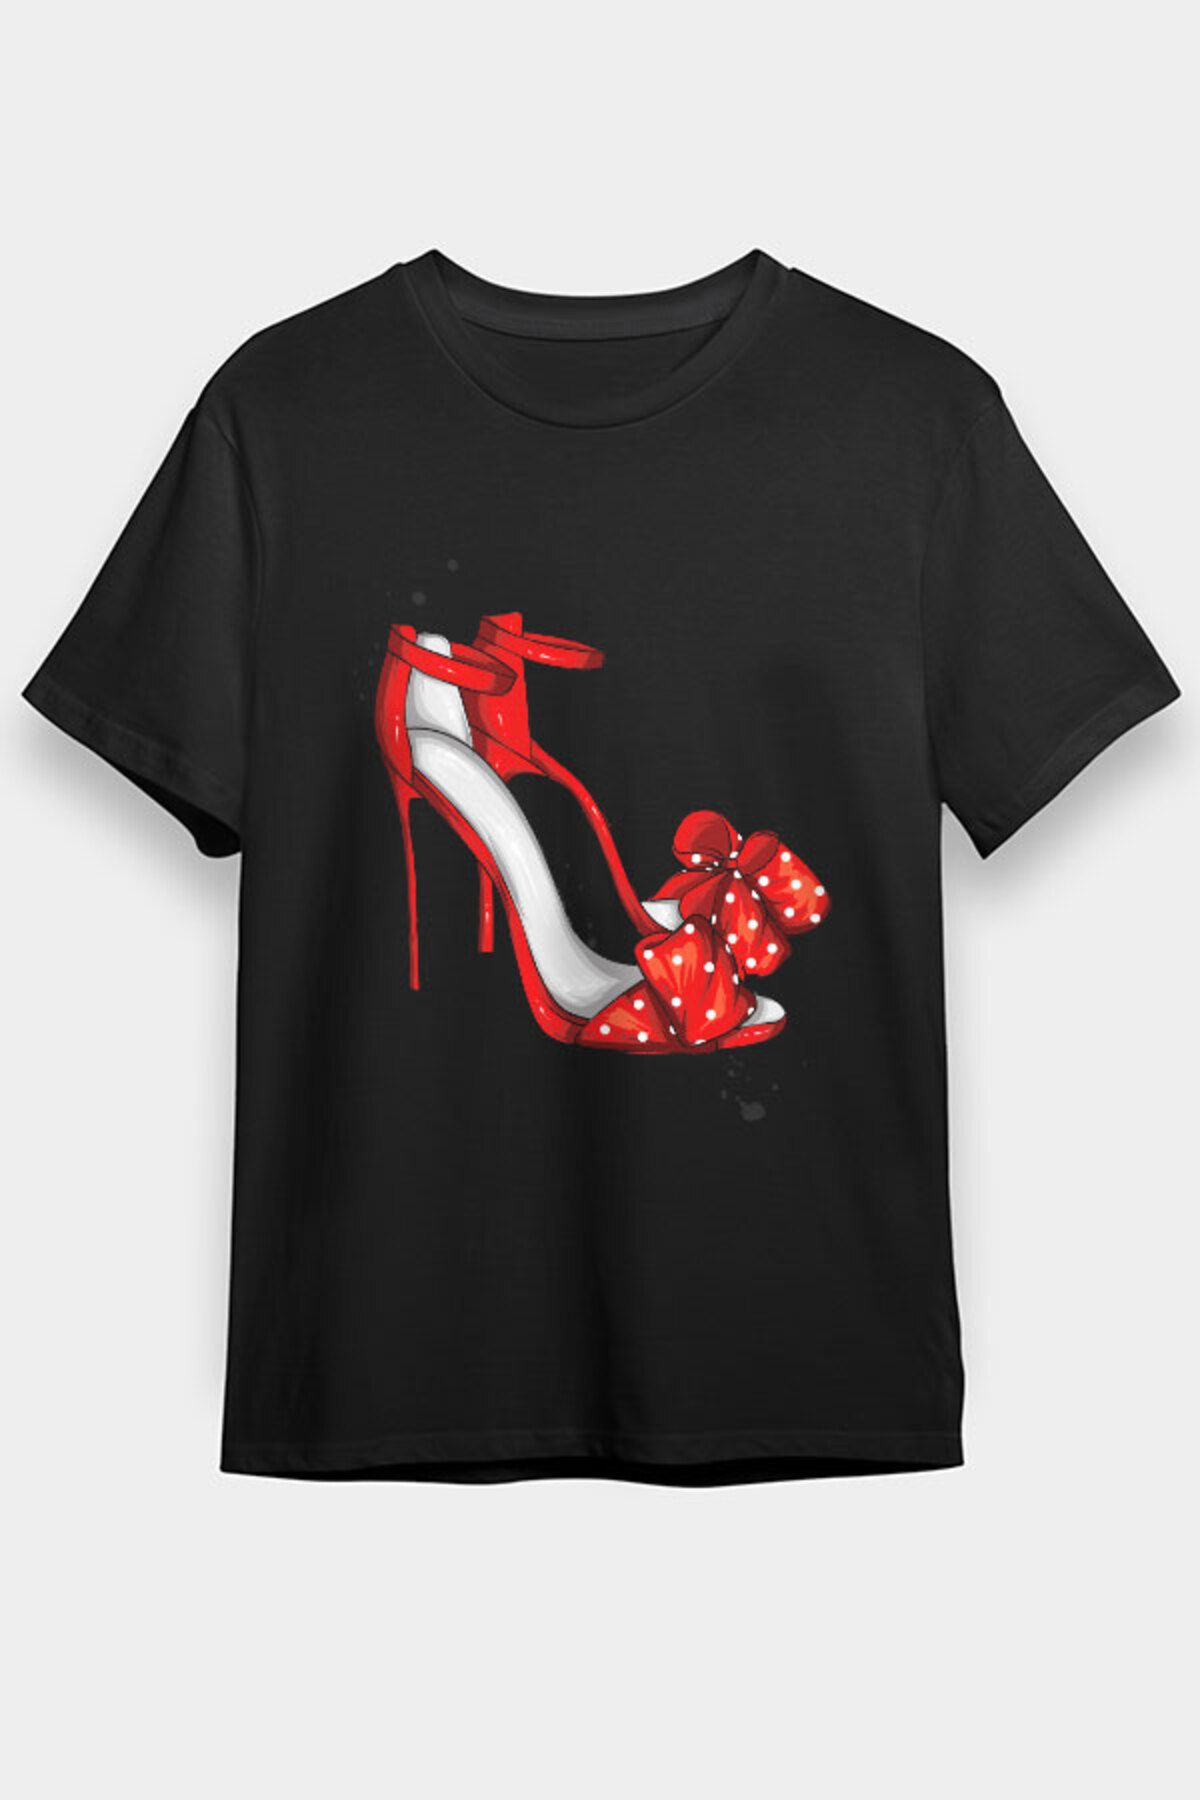 Darkhane Kırmızı Stiletto Tarzı Fashion Siyah Unisex Tişört T-Shirt